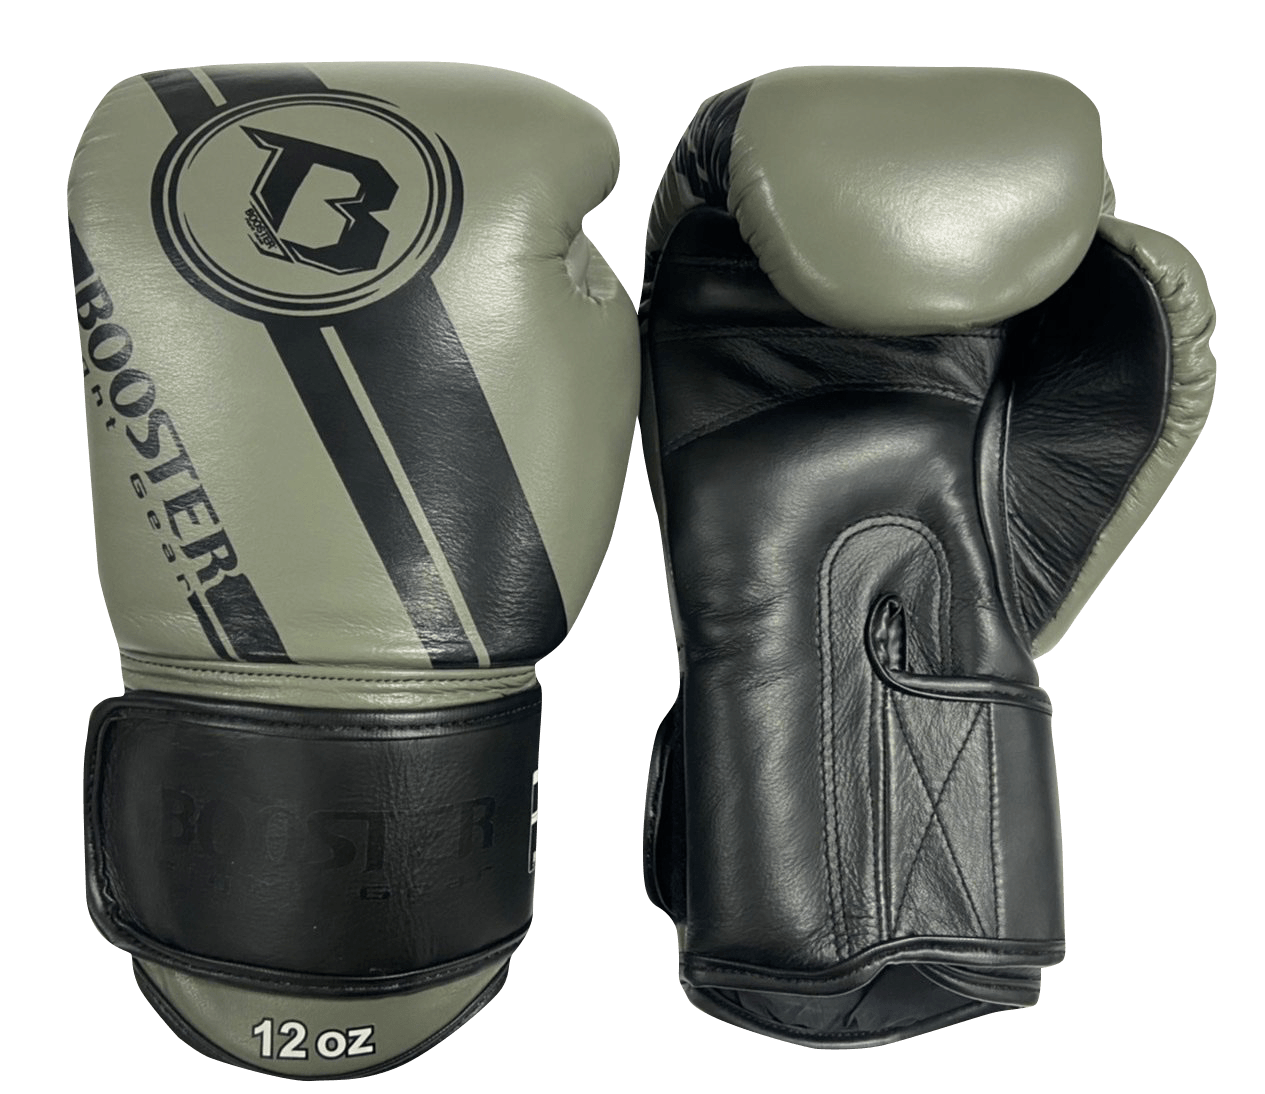 Booster Boxing Gloves BGLV3 GY BK - SUPER EXPORT SHOP